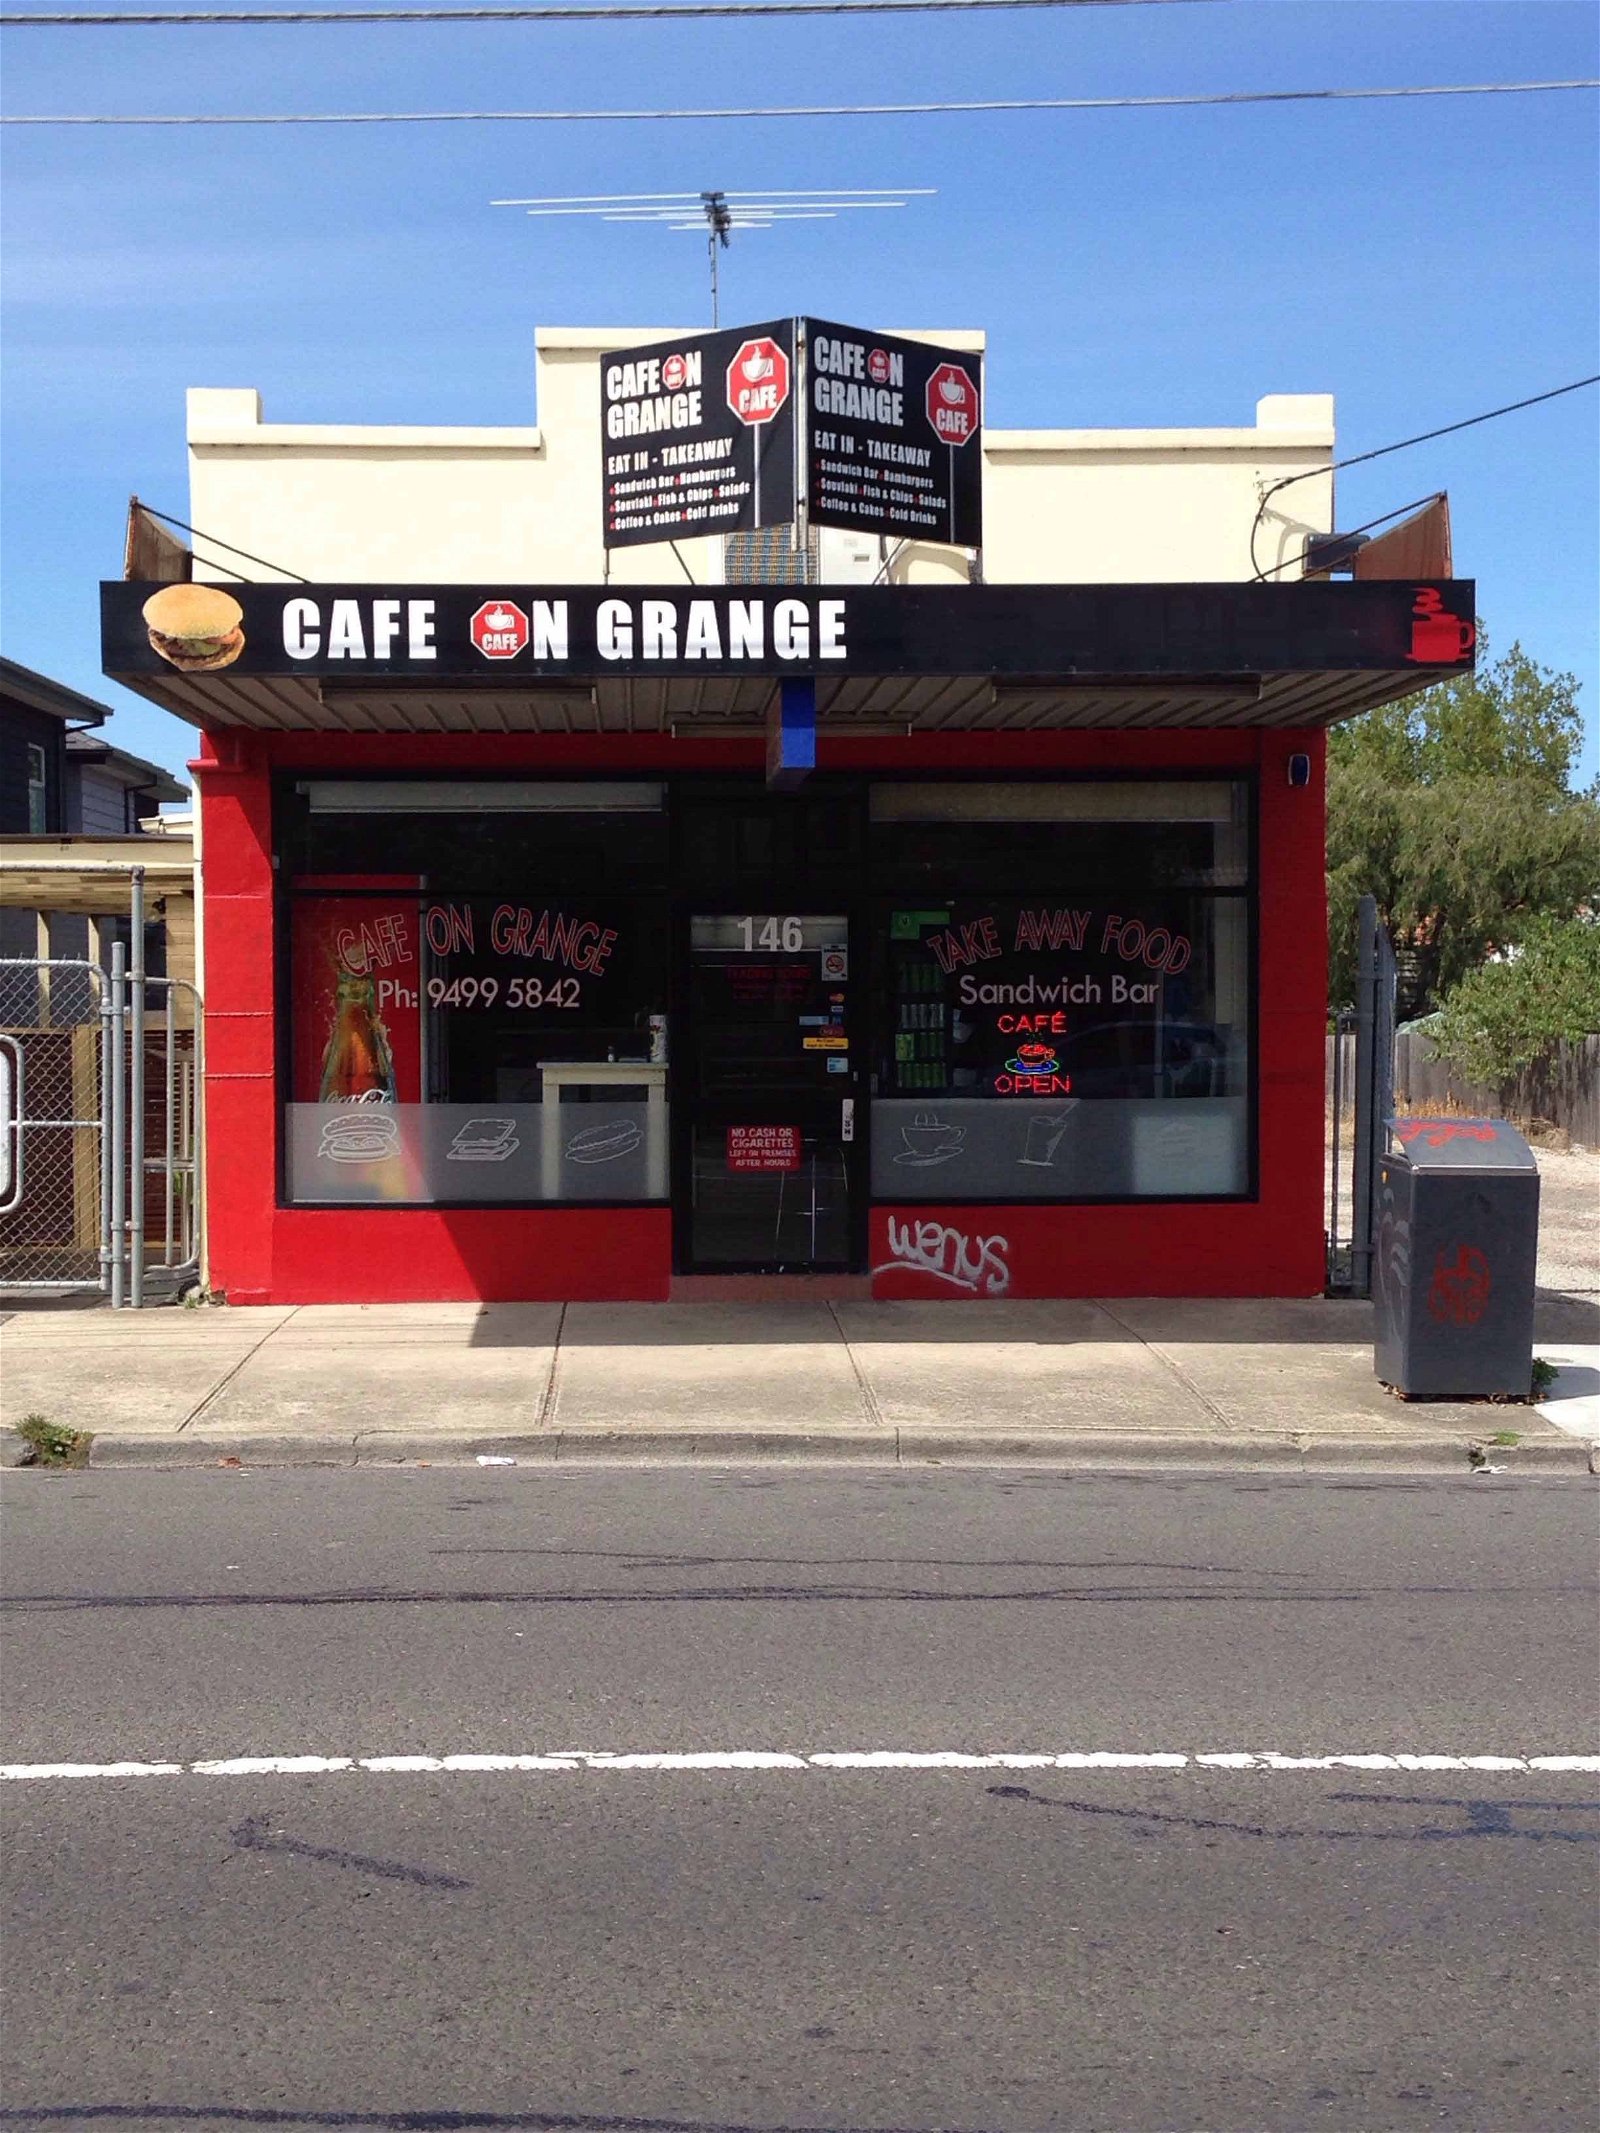 Cafe On Grange - Pubs Sydney